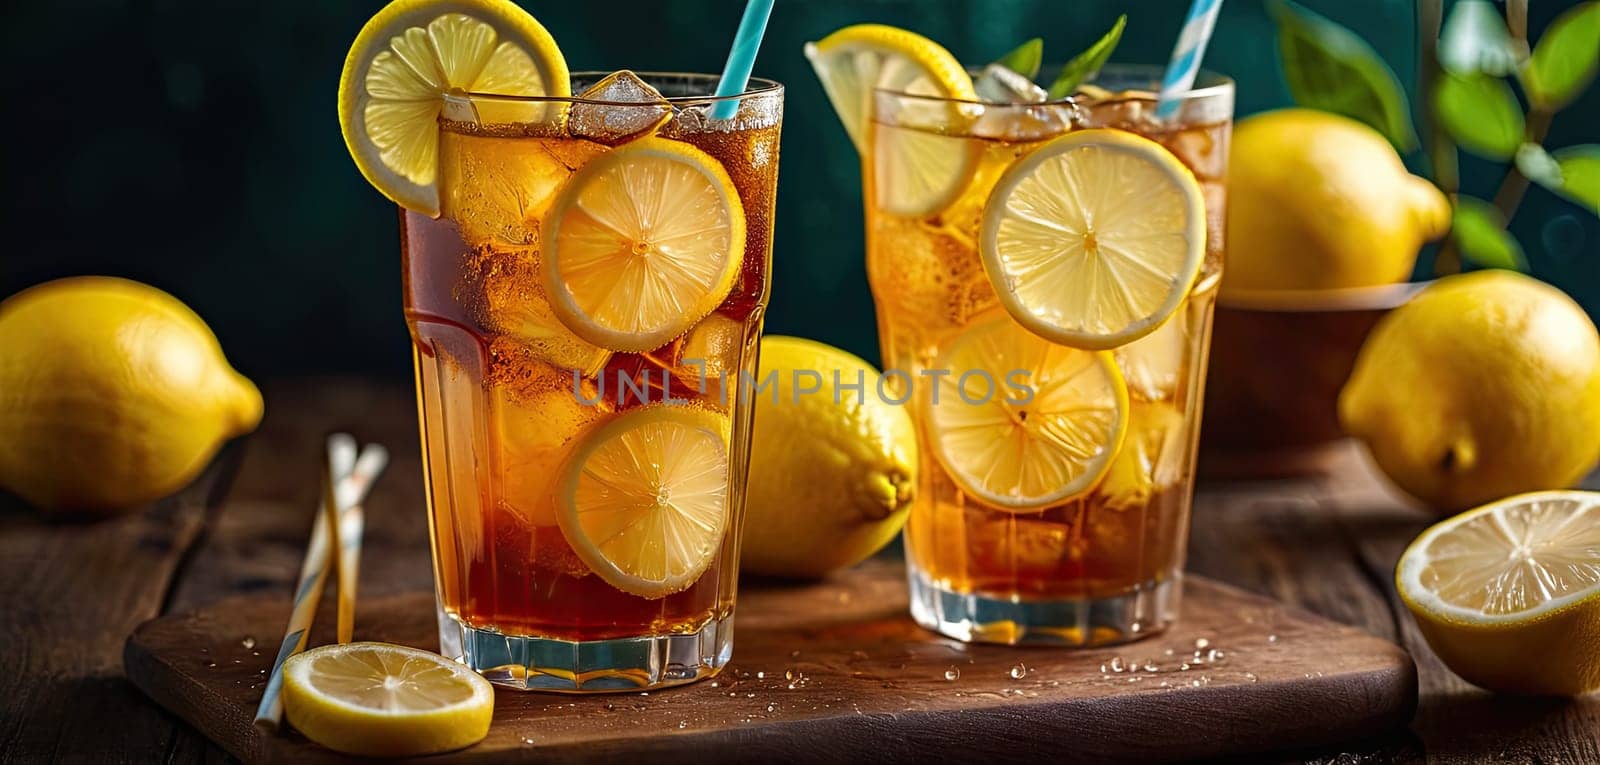 ice lemon tea, lemon, Served on wooden surface, evokes sense of refreshment